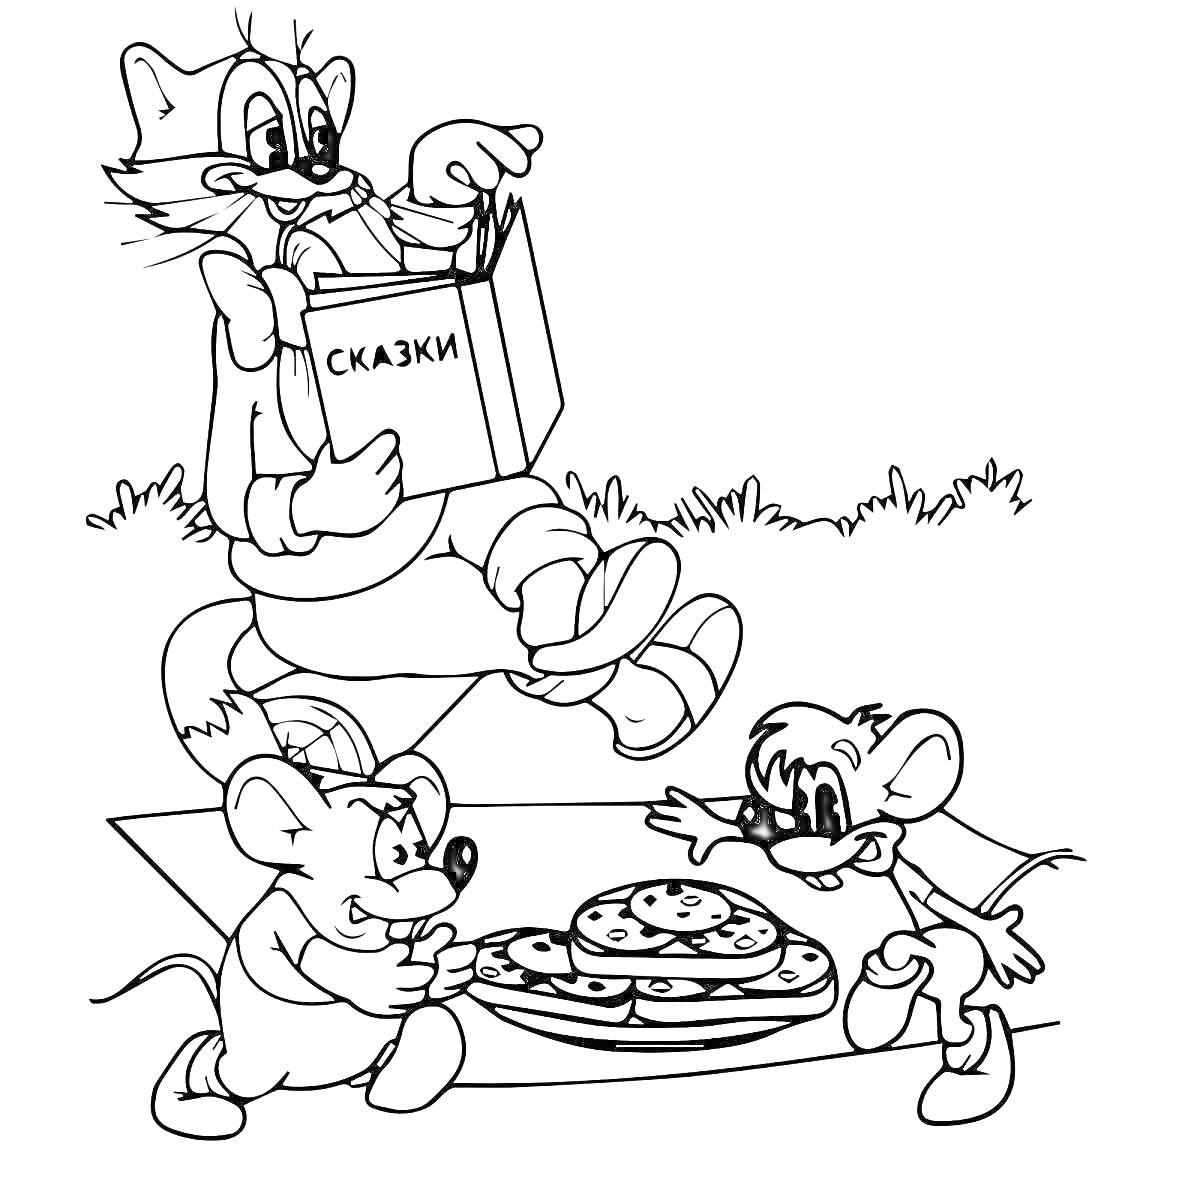 Раскраска Кот Леопольд читает книгу сказок, два мышонка с едой на блюде на траве